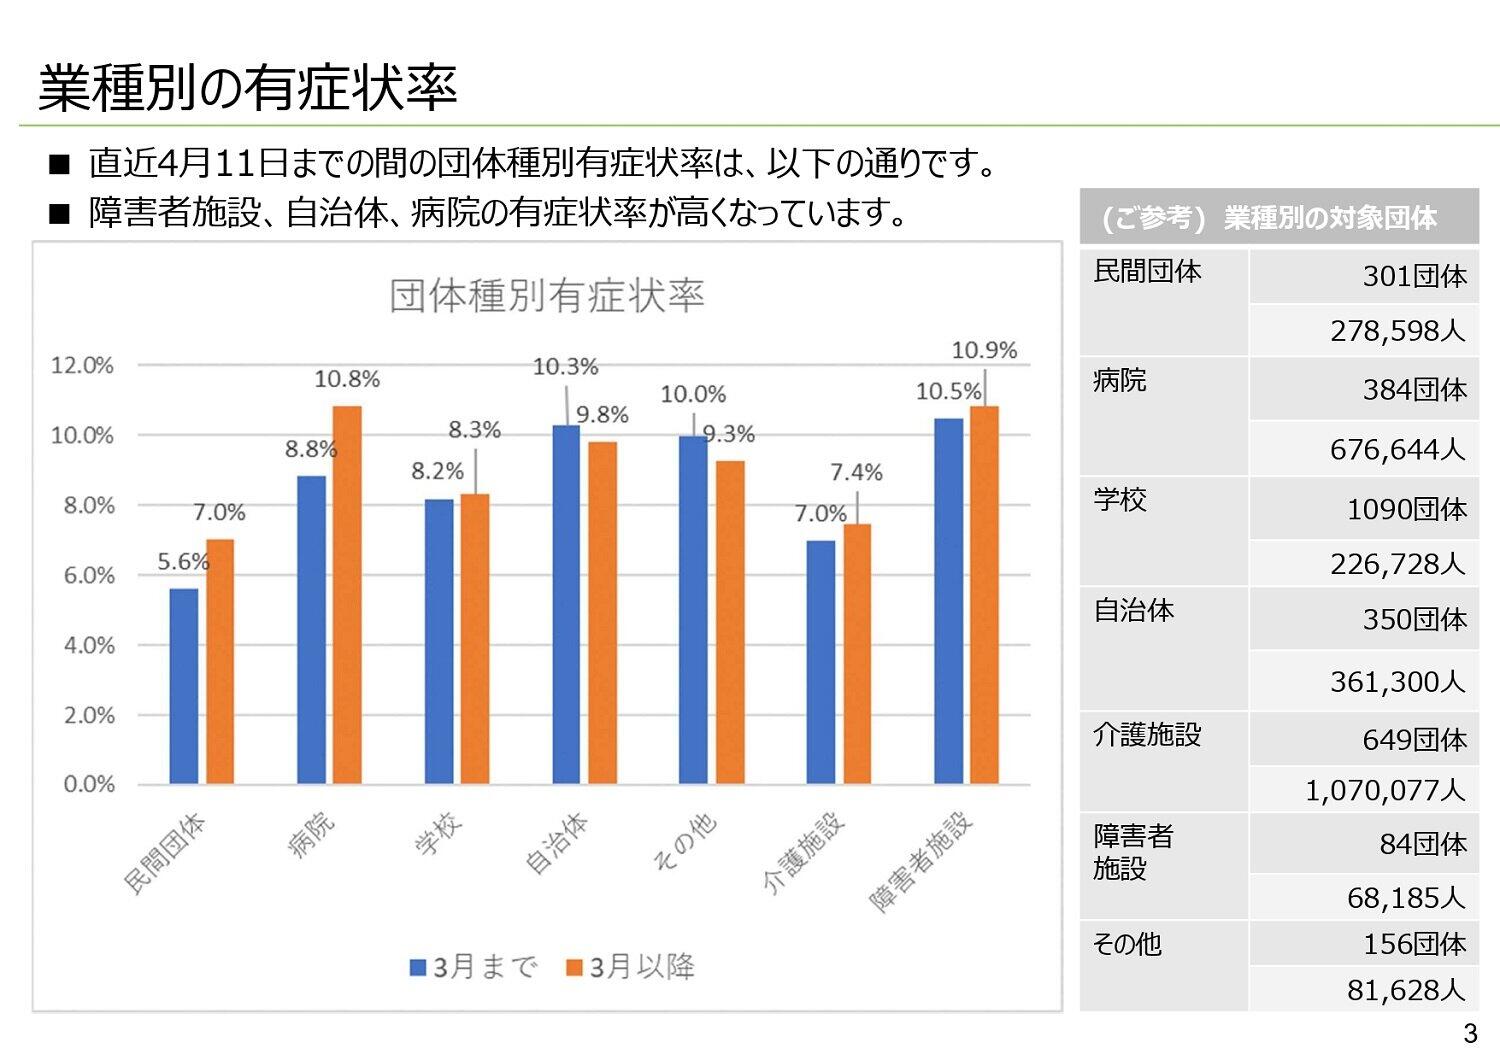 長崎県が提供している健康管理システム「N-CHAT（エヌチャット）」の「業種別の有症状率」のグラフ。7～10%に何らかの症状があることが分かる